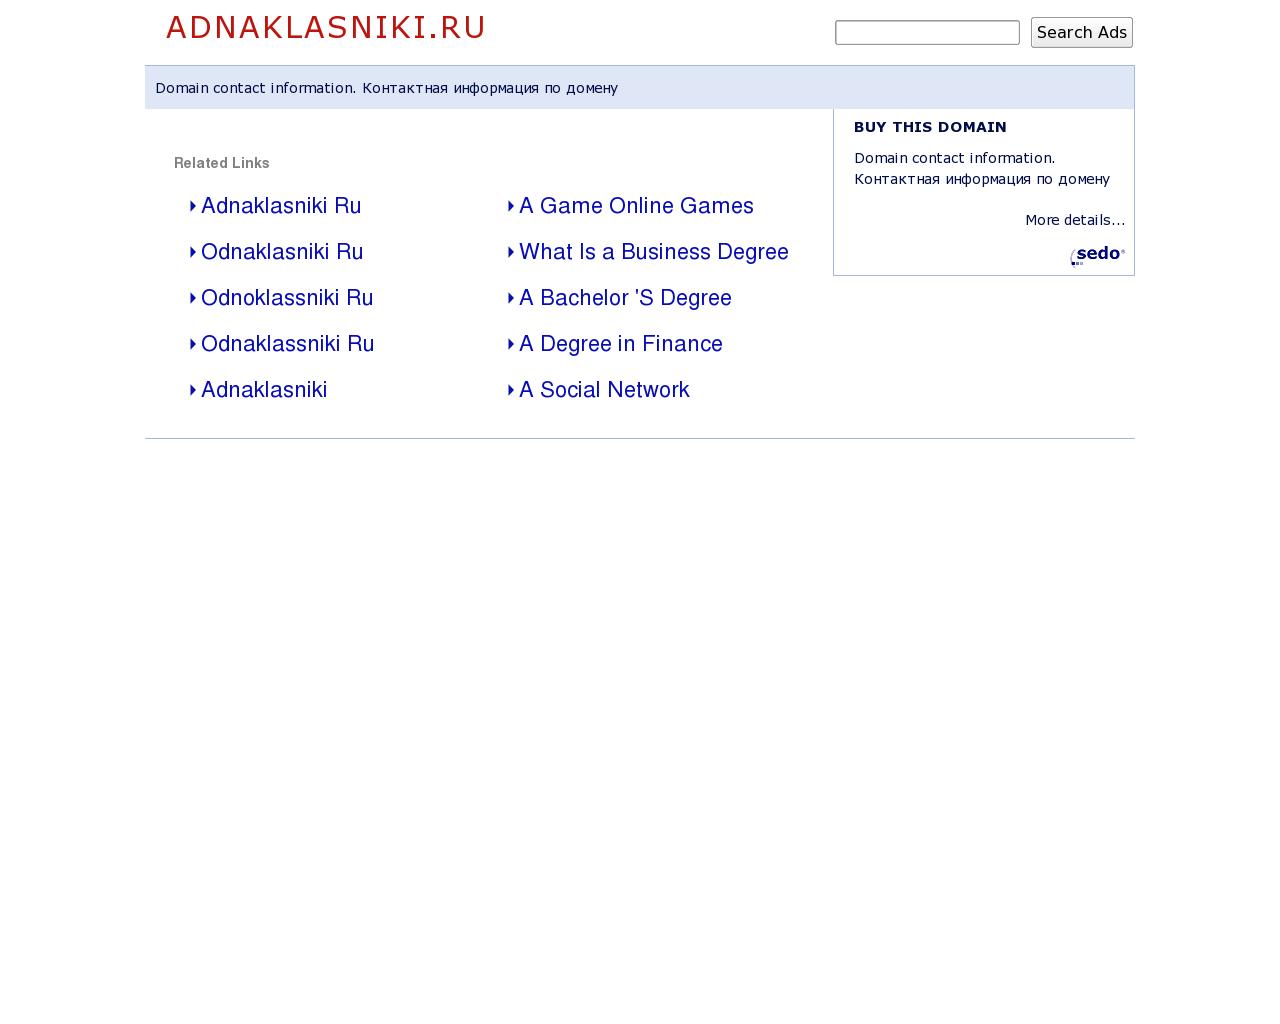 Изображение сайта adnaklasniki.ru в разрешении 1280x1024